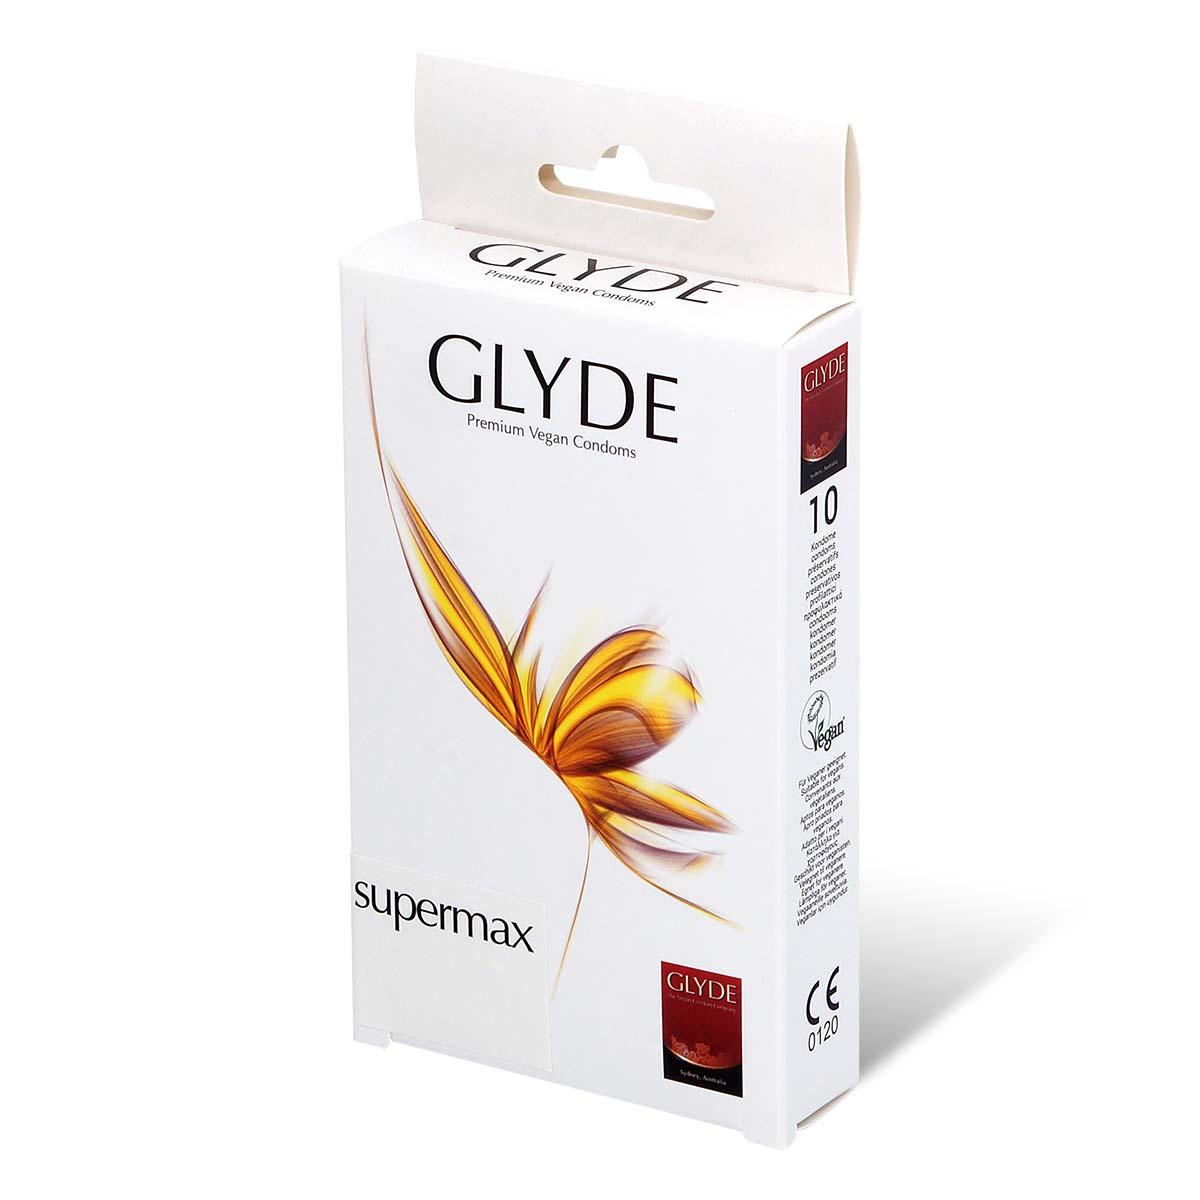 Glyde 格蕾迪 素食主义安全套 加大码 60mm 10 片装 乳胶安全套-p_1